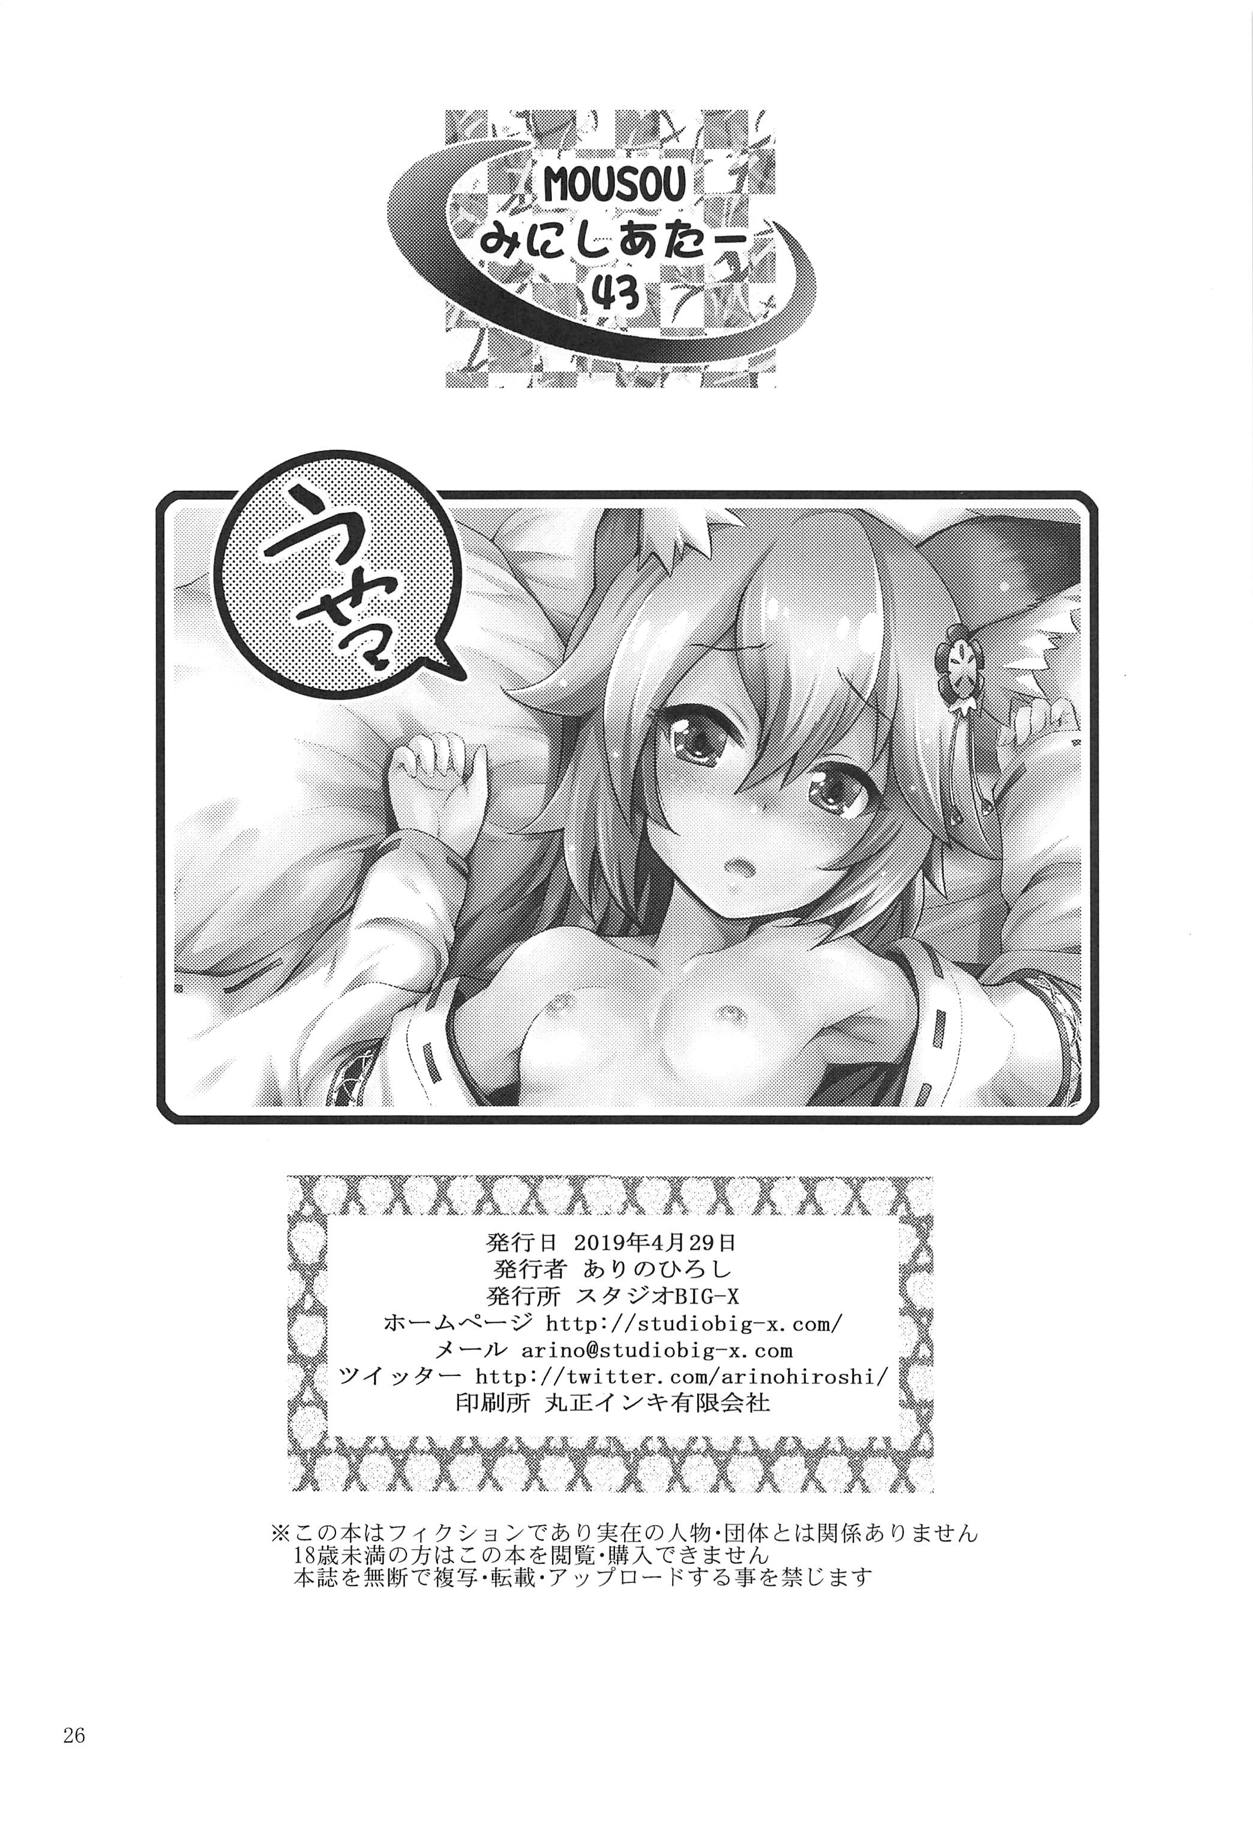 (COMIC1☆15) [スタジオBIG-X (ありのひろし)] MOUSOUみにしあたー43 (世話やきキツネの仙狐さん)